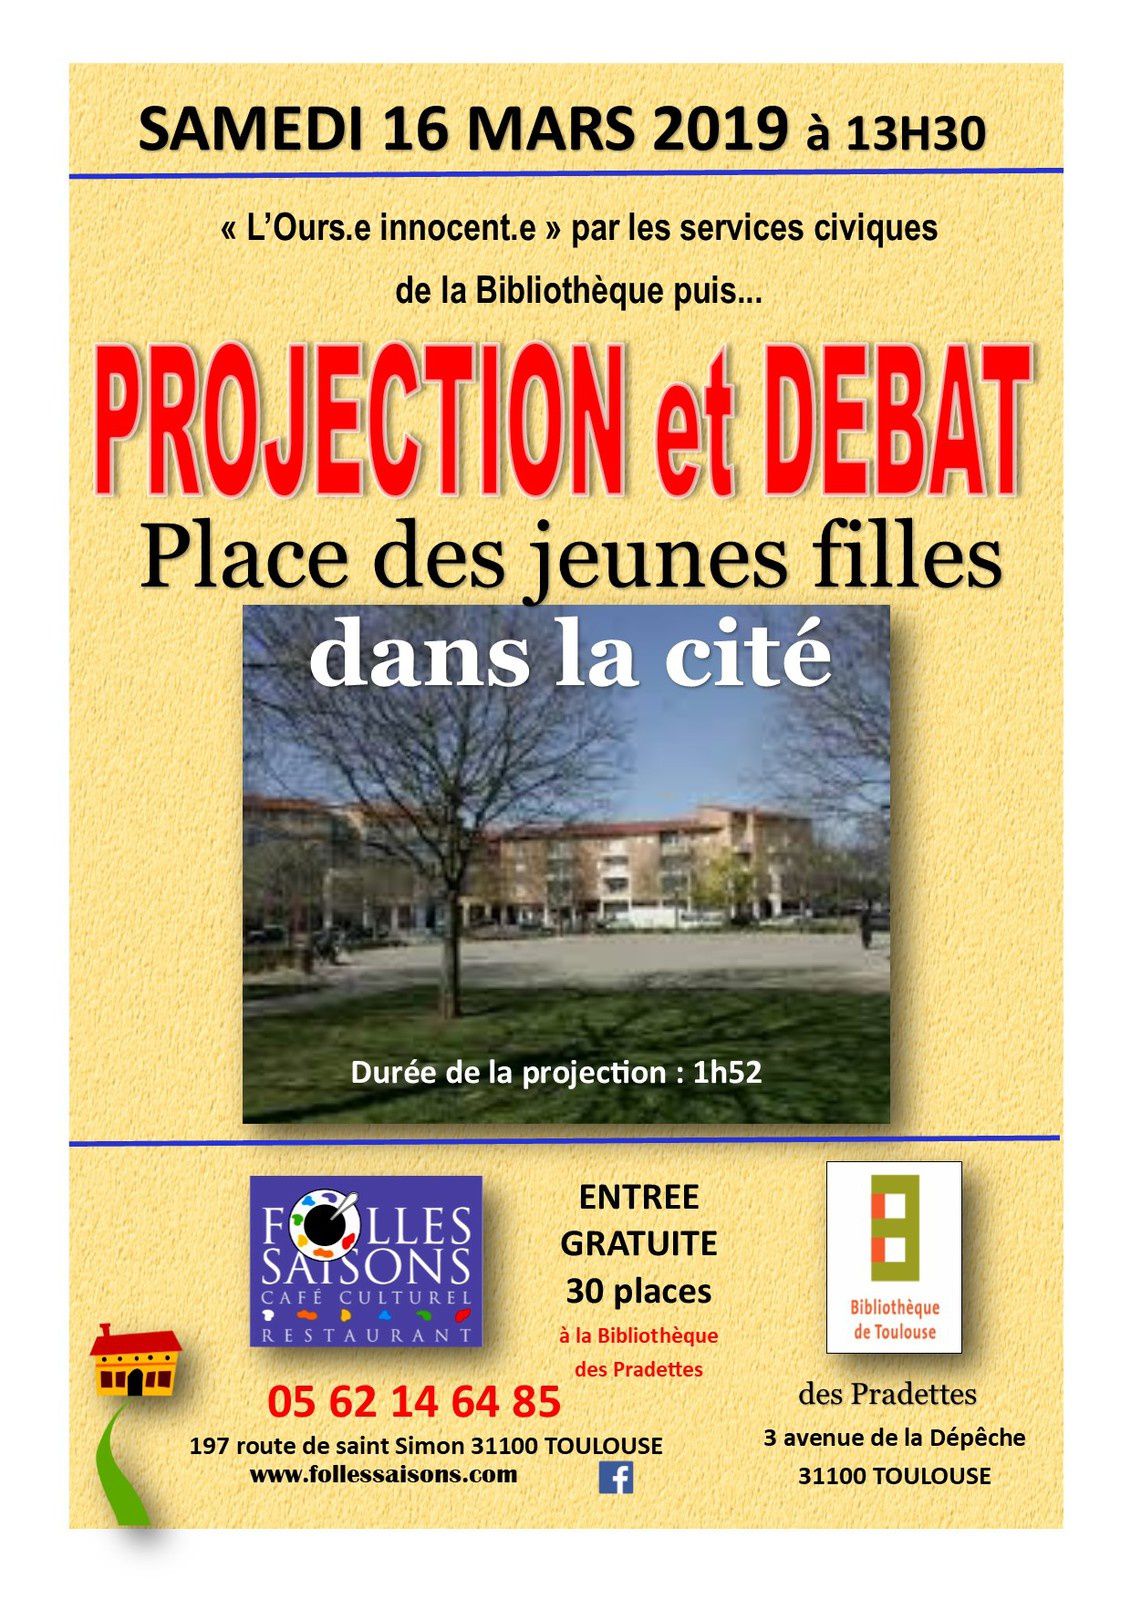 SAMEDI 16 MARS 2019 13H30 PROJECTION DE FILM à la Bibliothèque des Pradettes